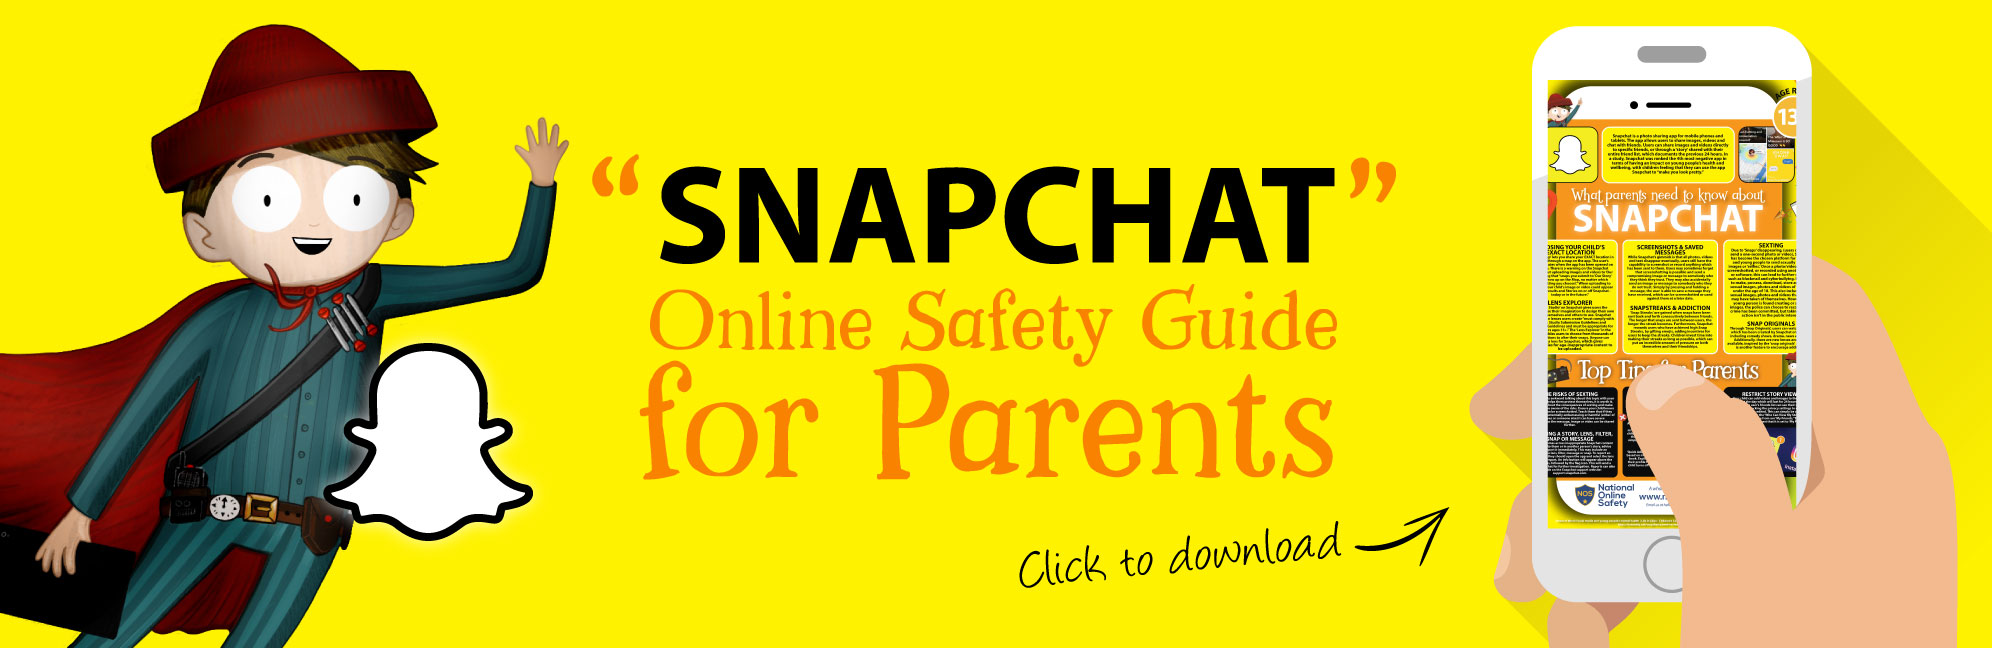 Snapchat-Online-Safety-Parents-Guide-Web-Image-121118-V1